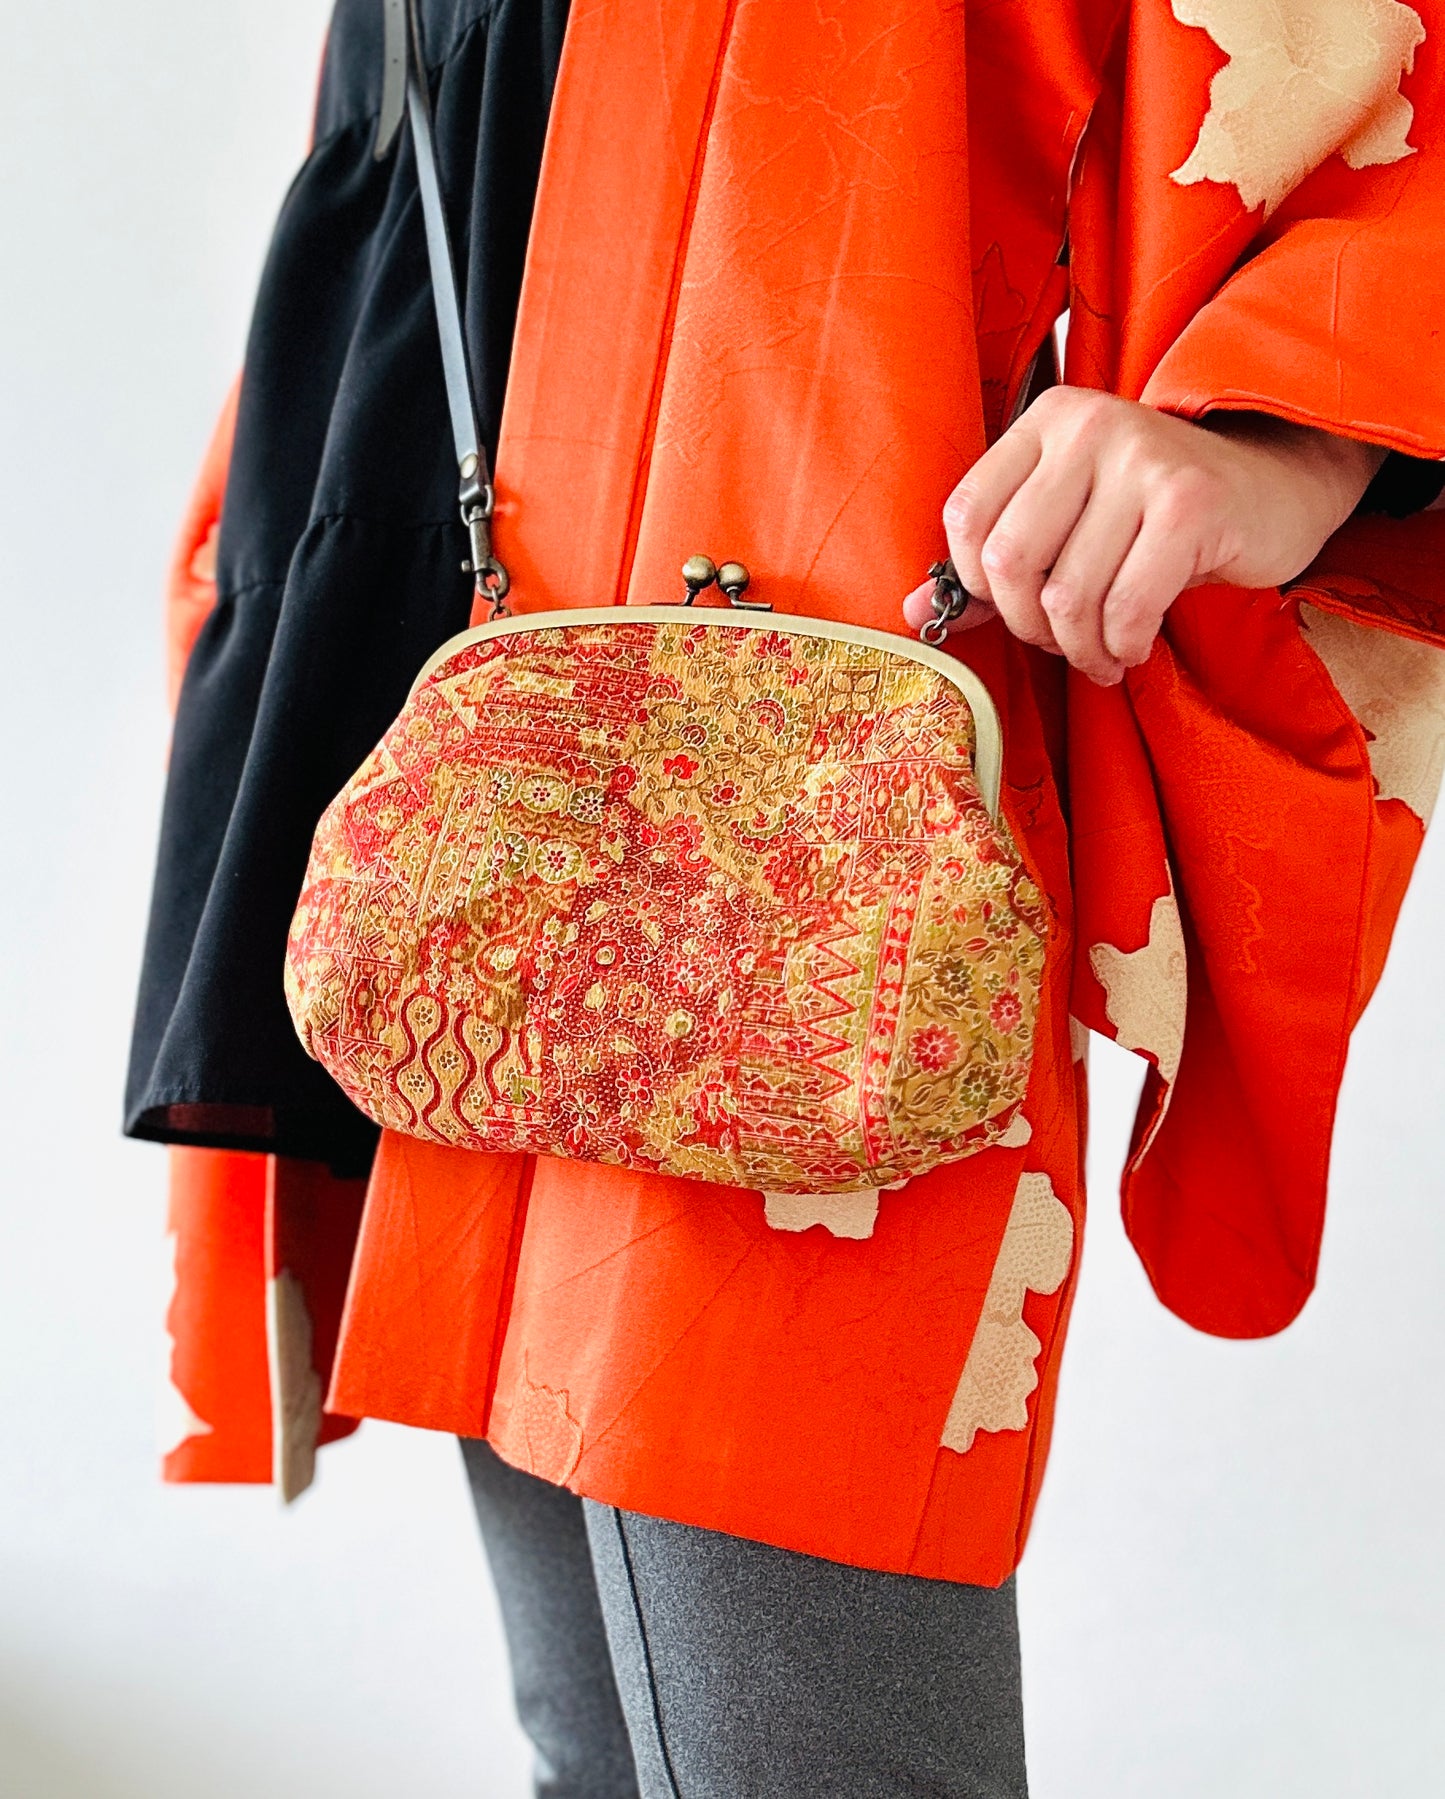 【Gamaguchi-en】 motifs 2way-handbag / Chintz, embrayage, pochette, sac japonais, sac à bandoulière, cadeaux japonais